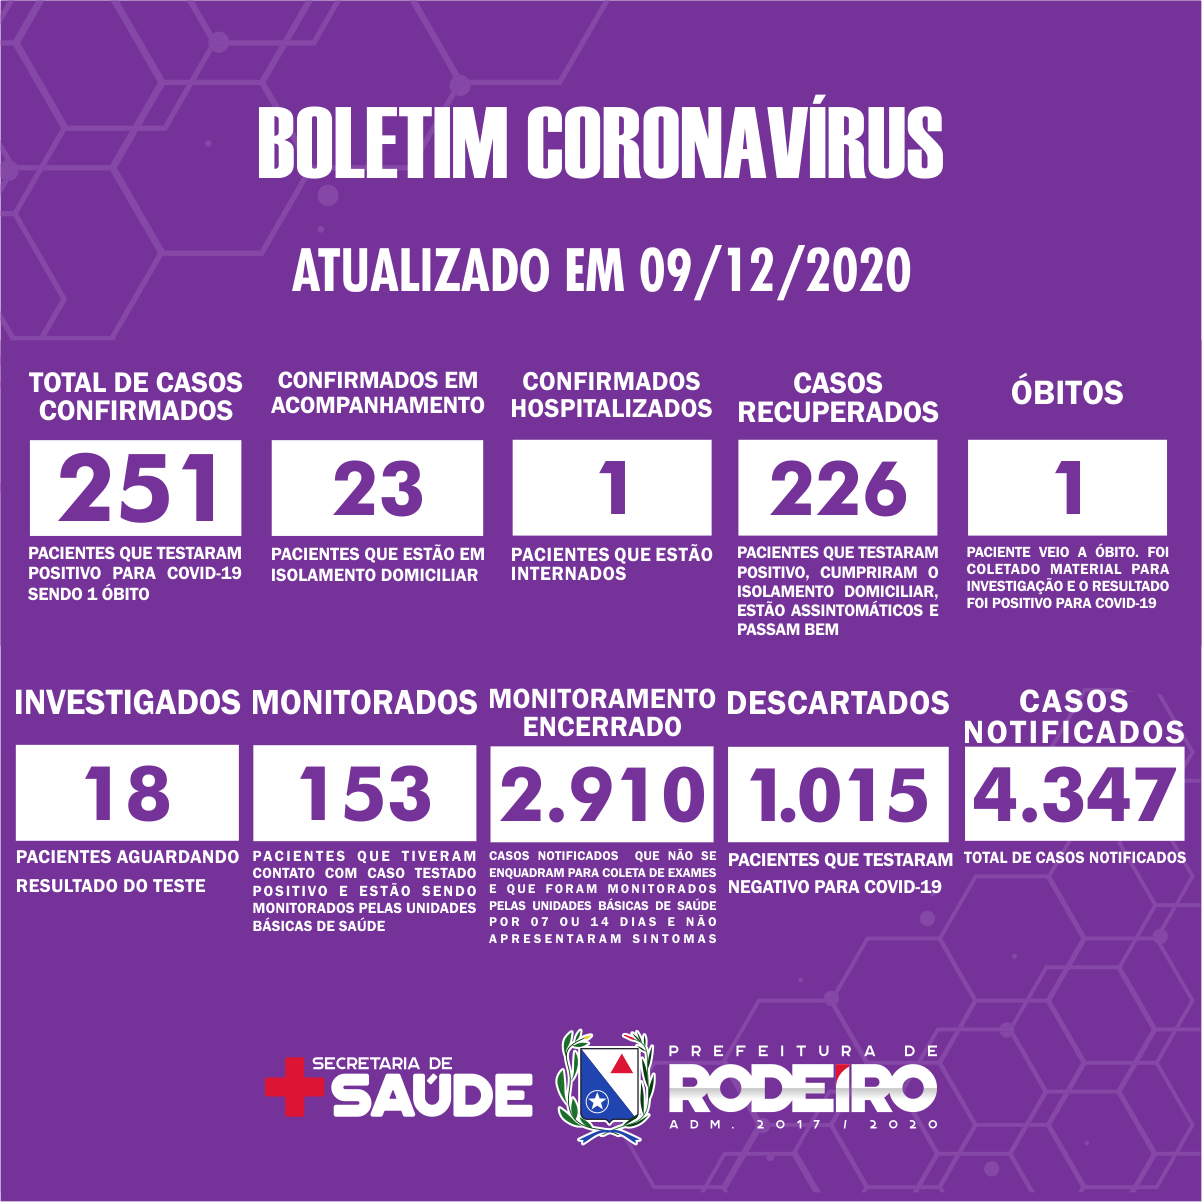 Boletim Epidemiológico do Município de Rodeiro sobre coronavírus, atualizado em 09/12/2020